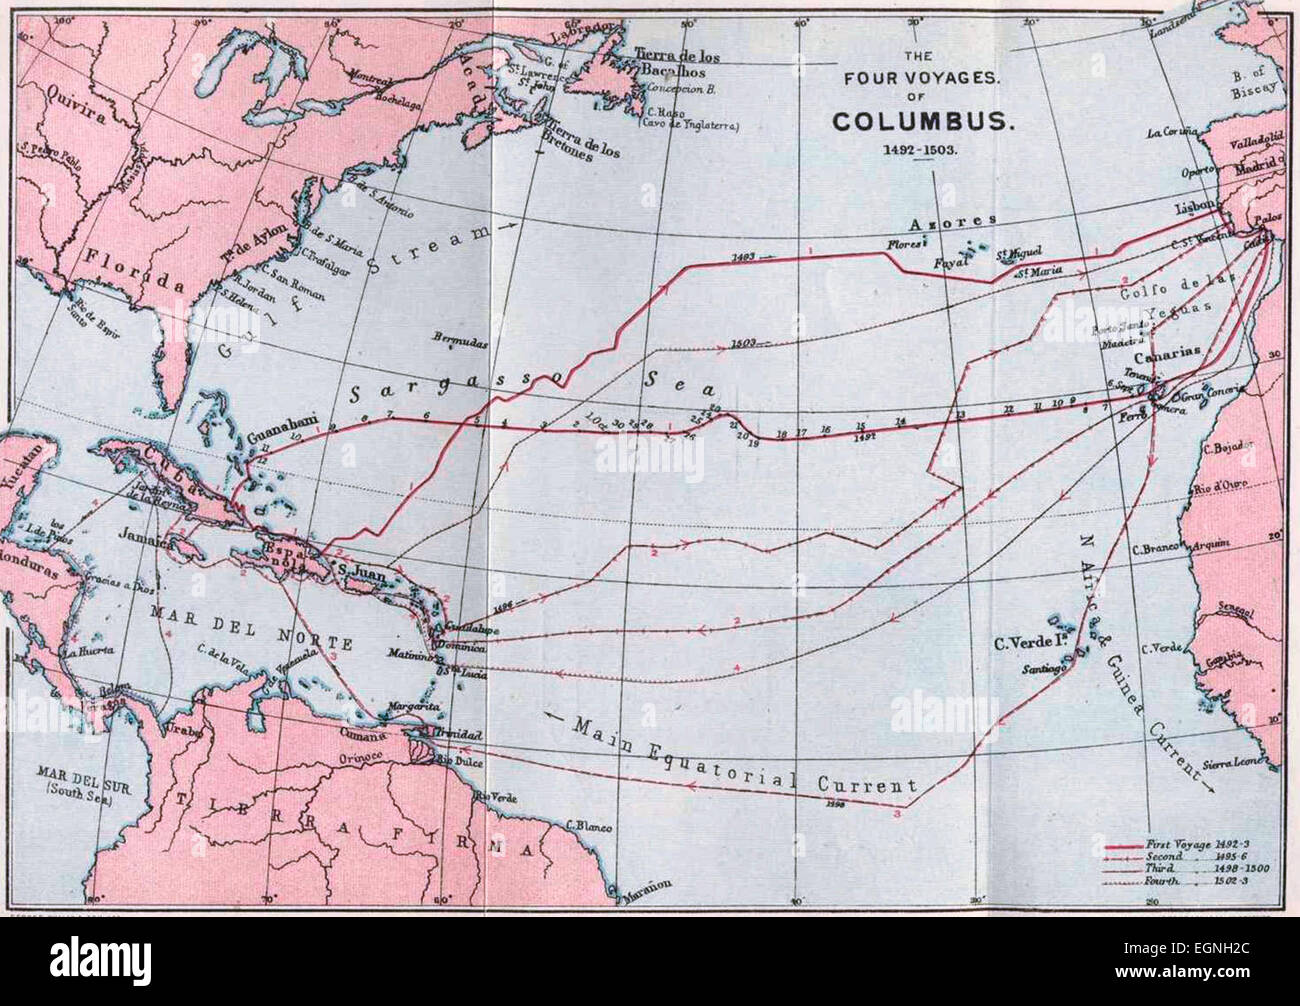 Karte der vier Reisen des Columbus 1492-1503 Stockfoto